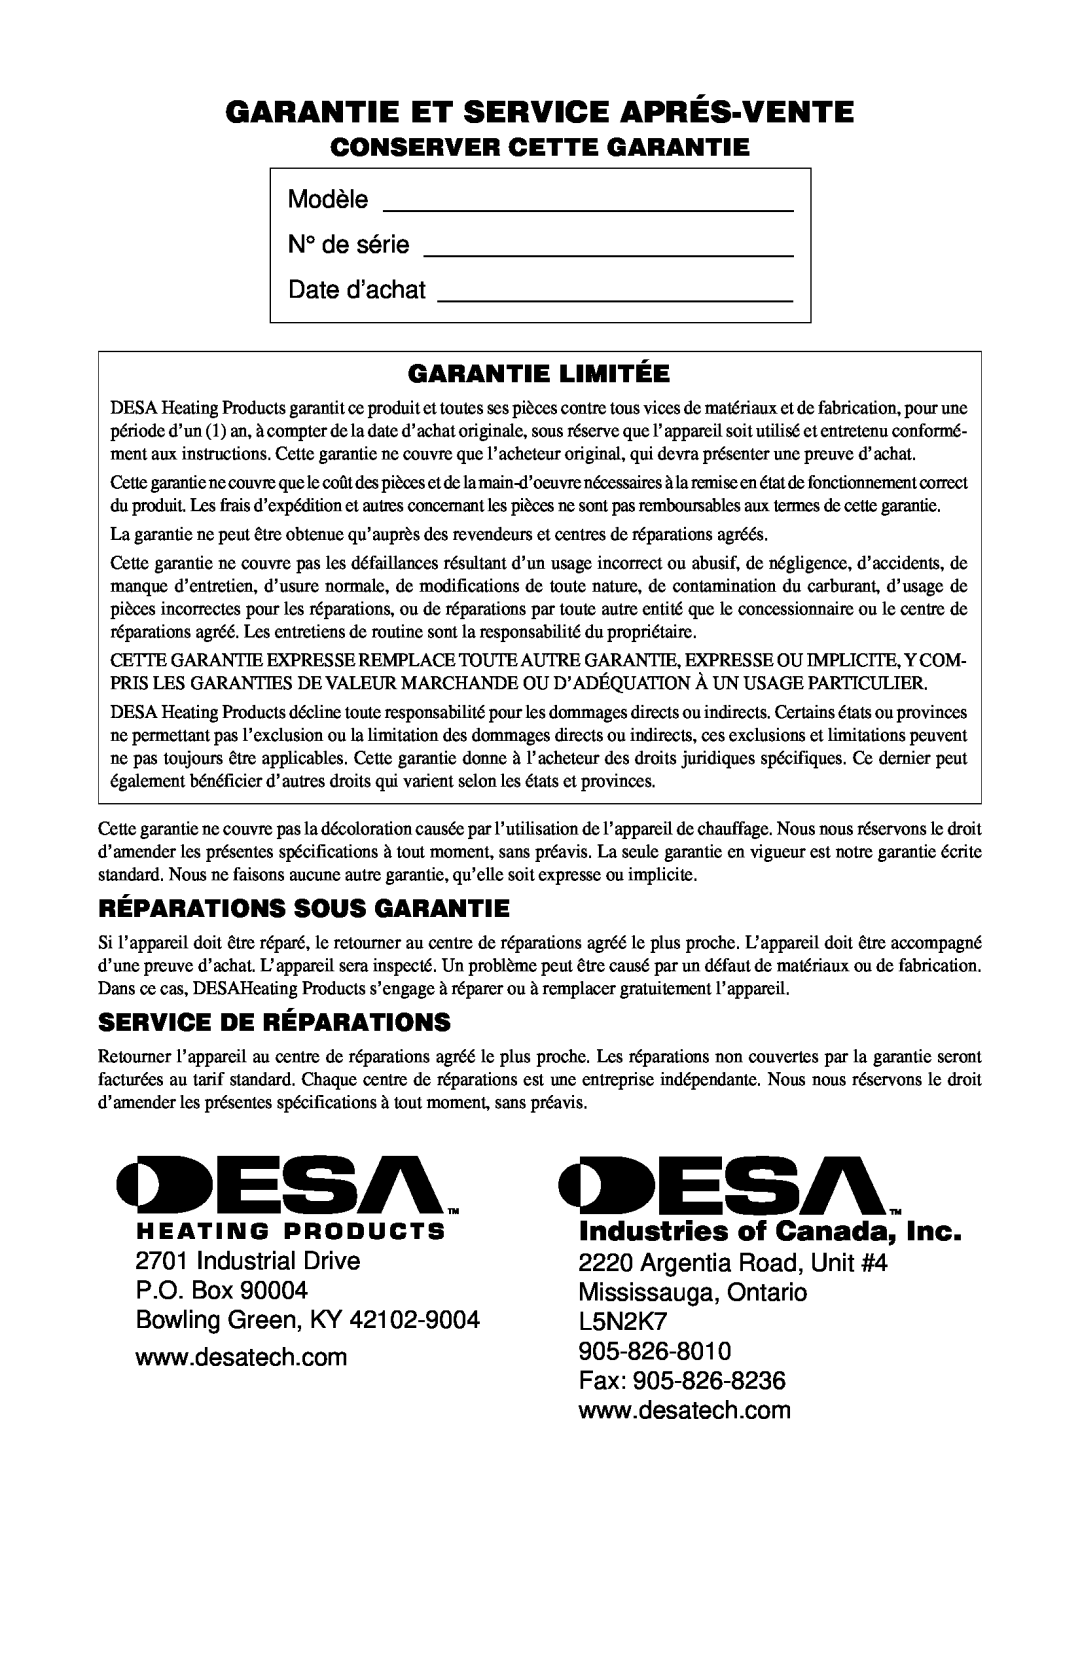 Desa CANADIAN PROPANE CONSTRUCTION CONVECTION HEATER Garantie Et Service Aprés-Vente, Industries of Canada, Inc 